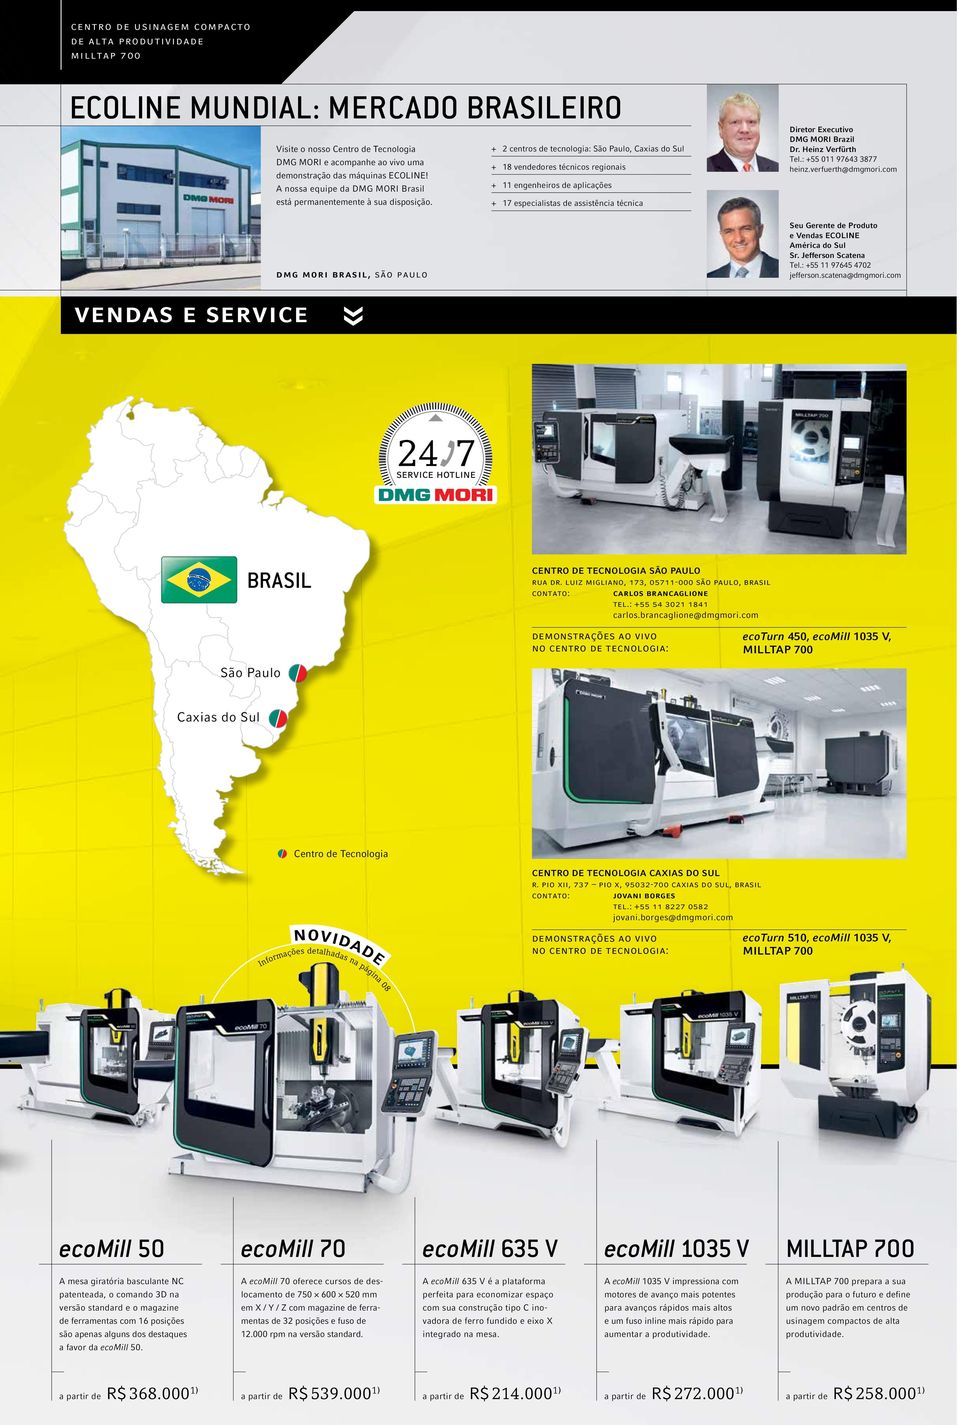 dmg mori brasil, são paulo + + 2 centros de tecnologia: São Paulo, Caxias do Sul + + 18 vendedores técnicos regionais + + 11 engenheiros de aplicações + + 17 especialistas de assistência técnica